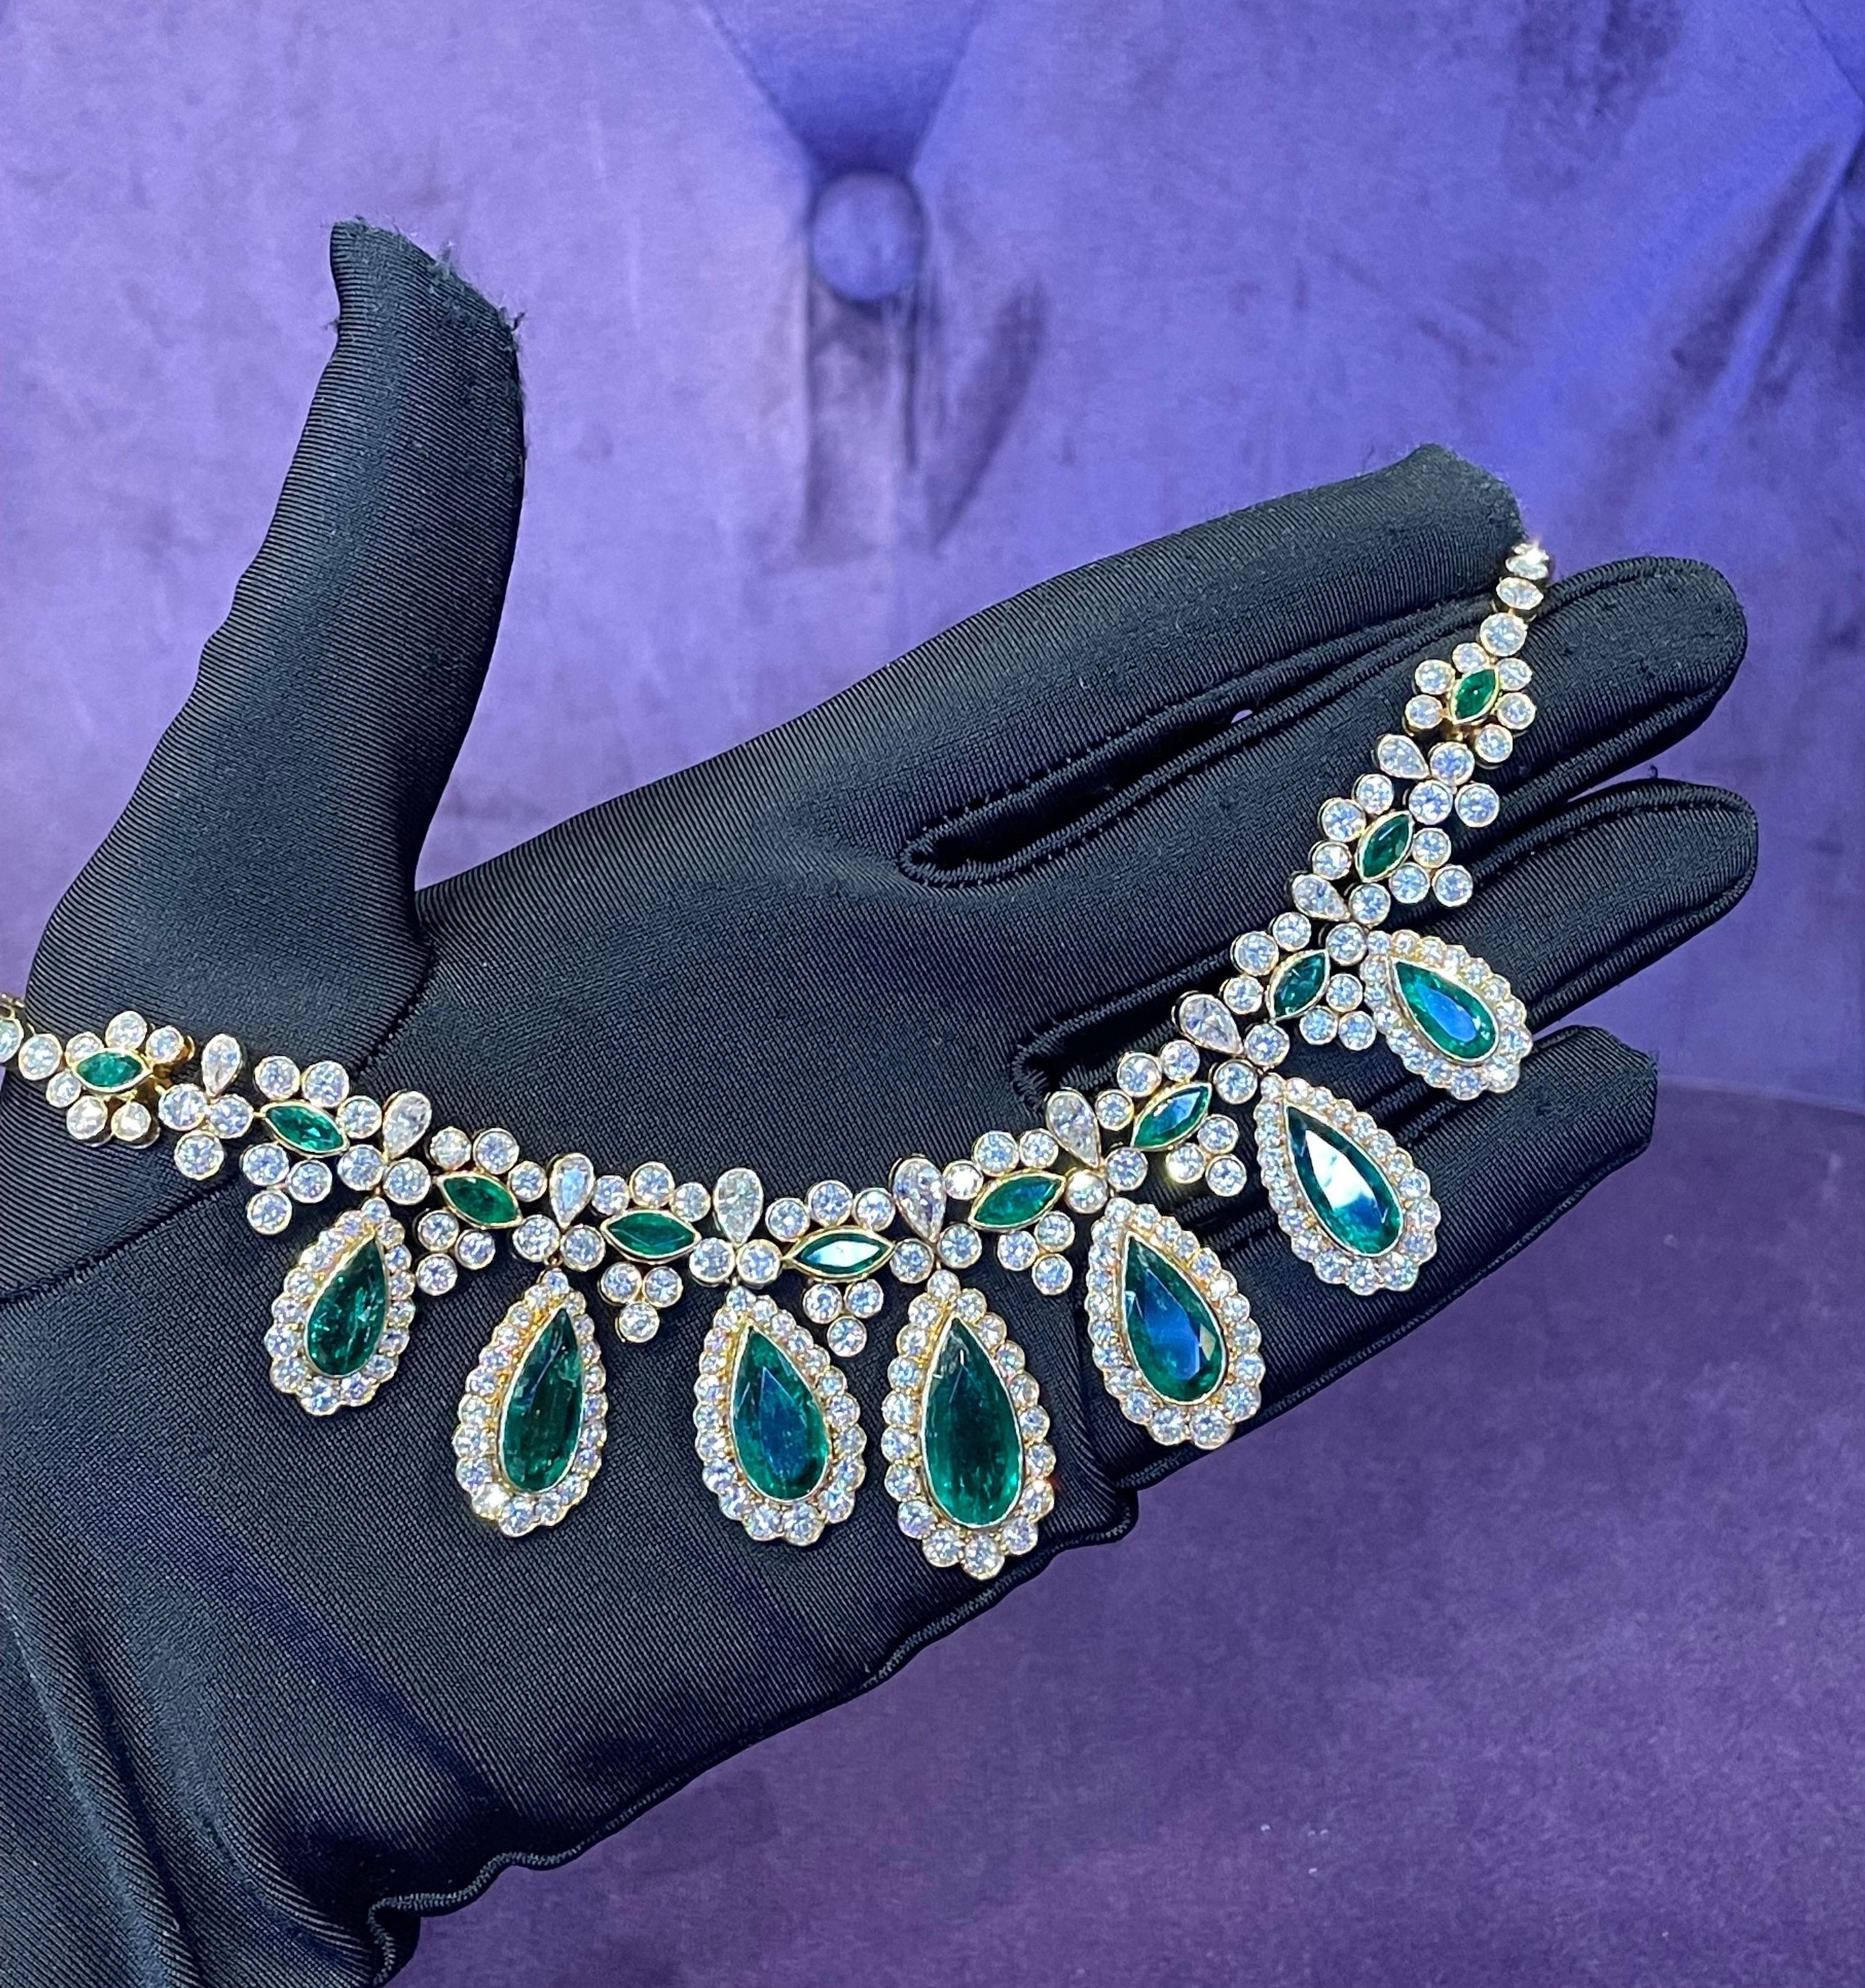 van cleef emerald necklace